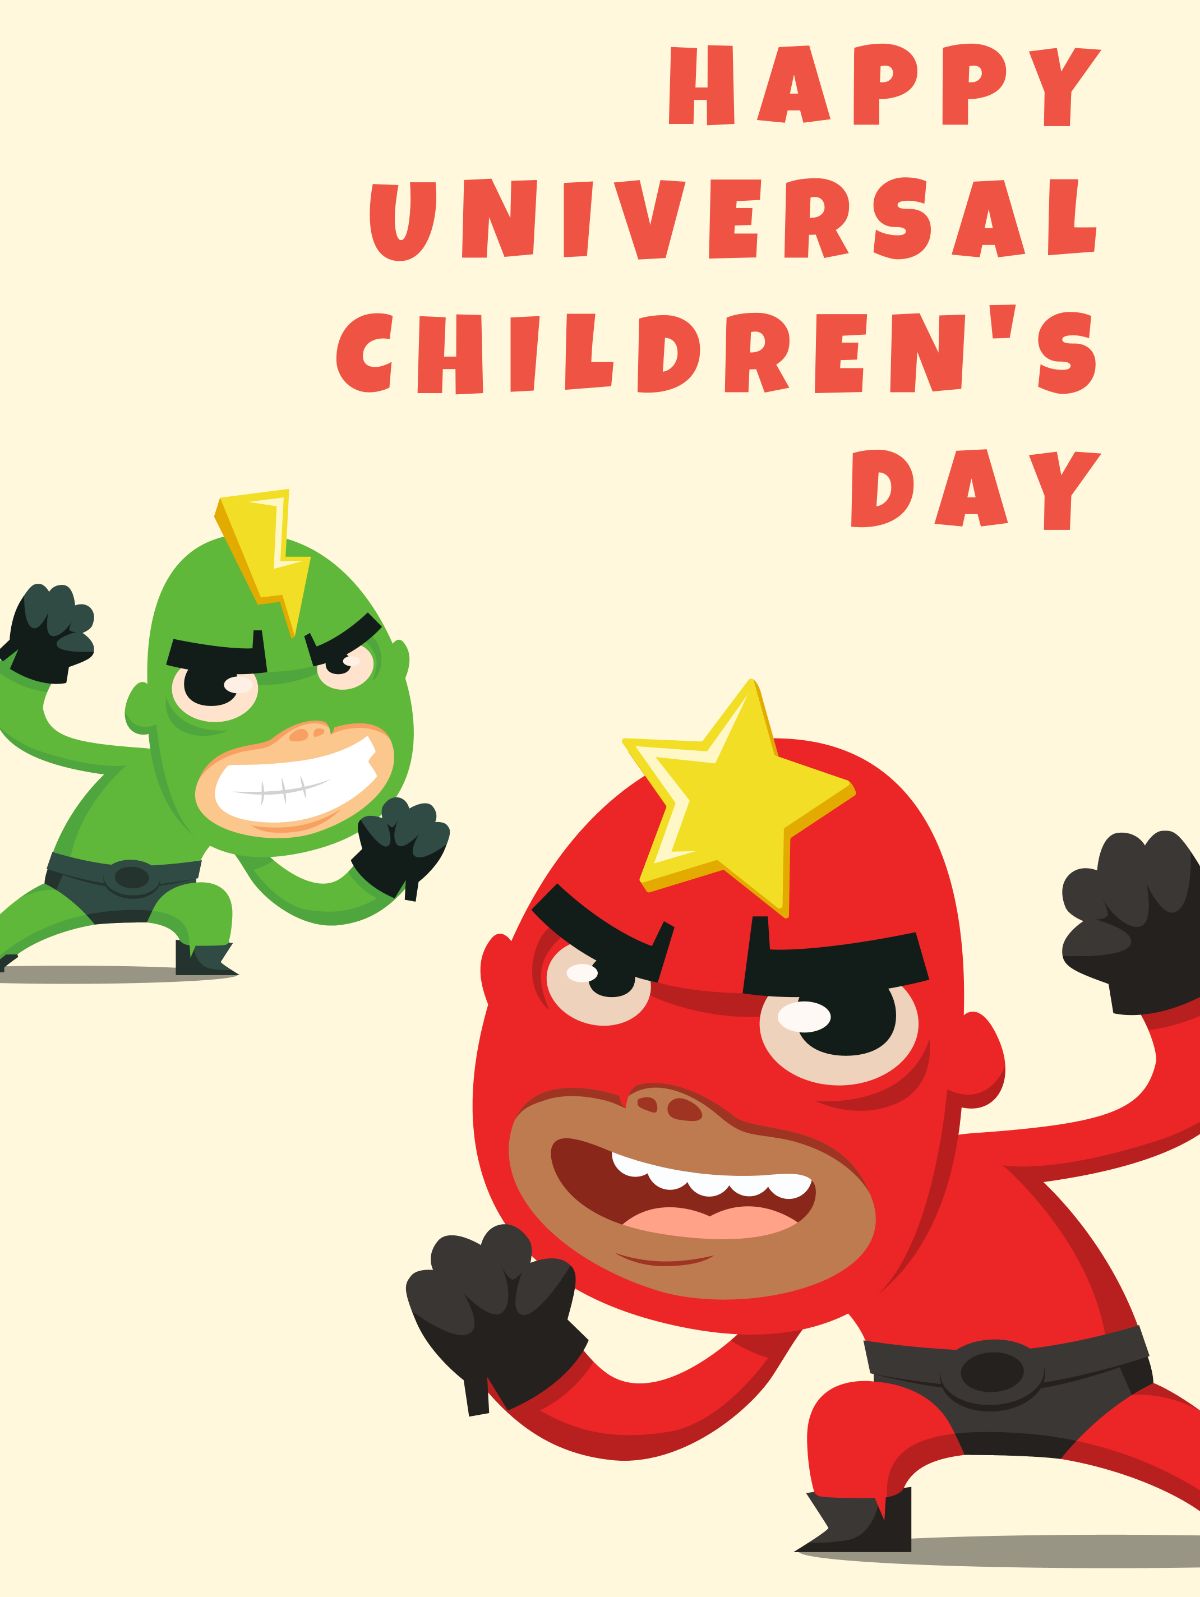 Universal Children’s Day Threads Post